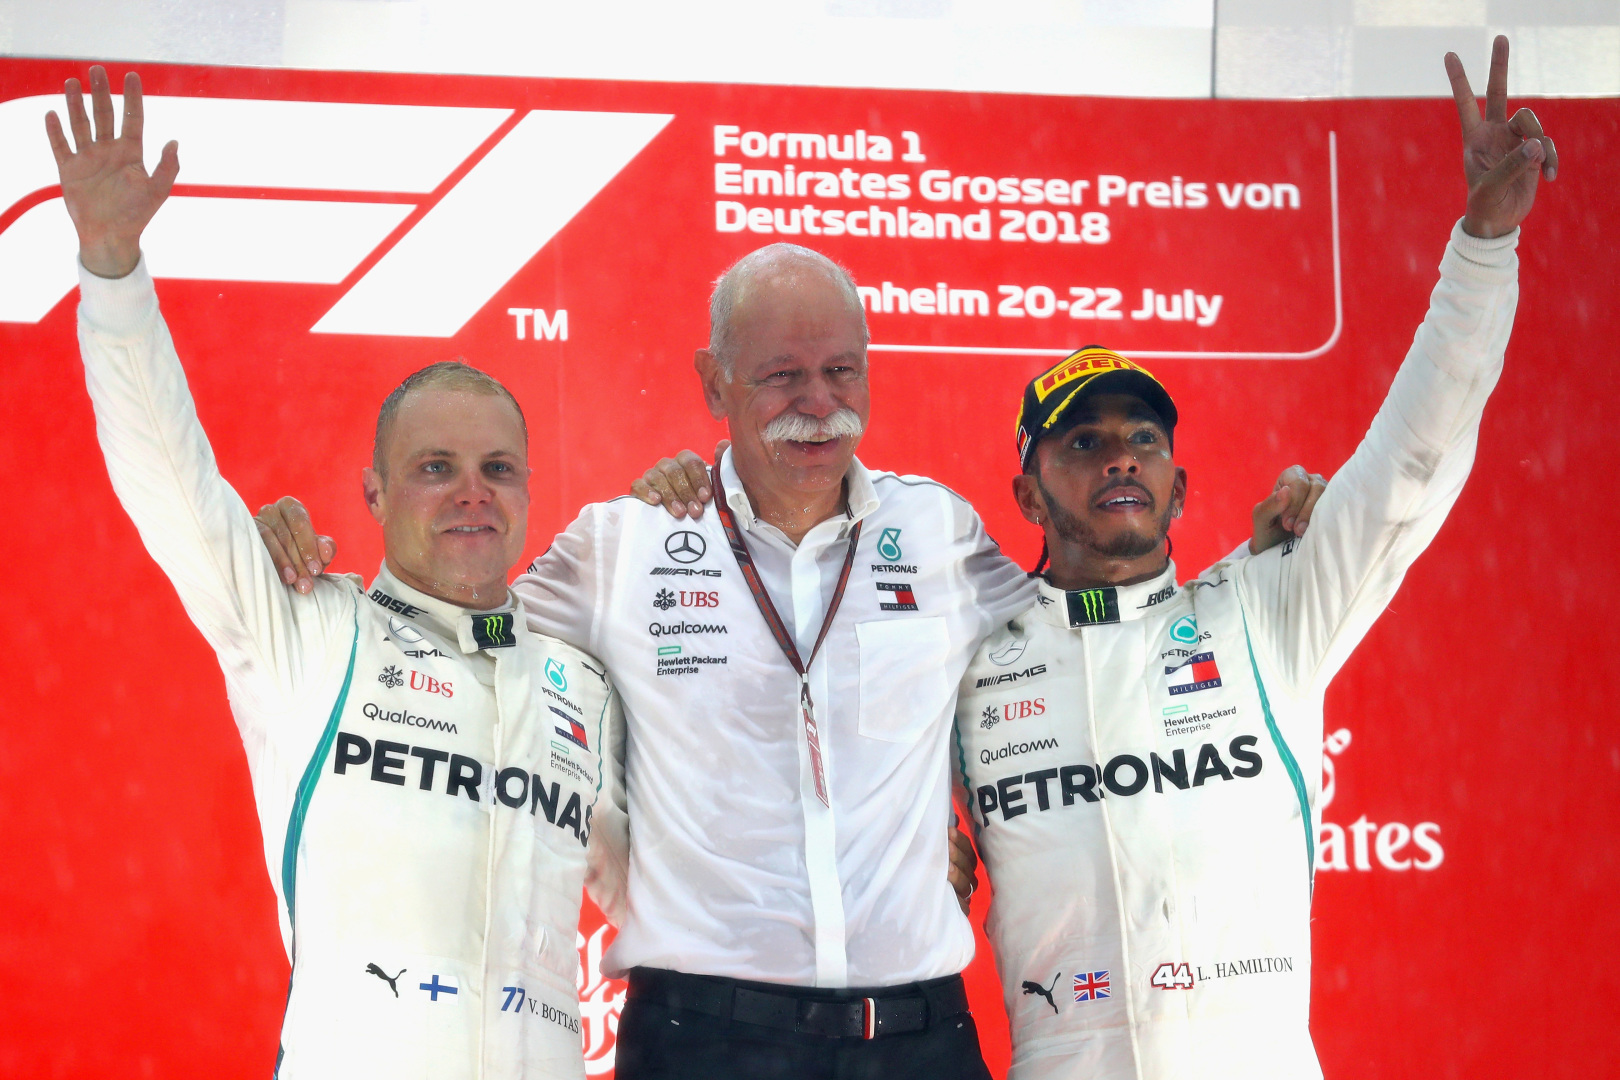 2018 German Grand Prix, Sunday – Steve Etherington